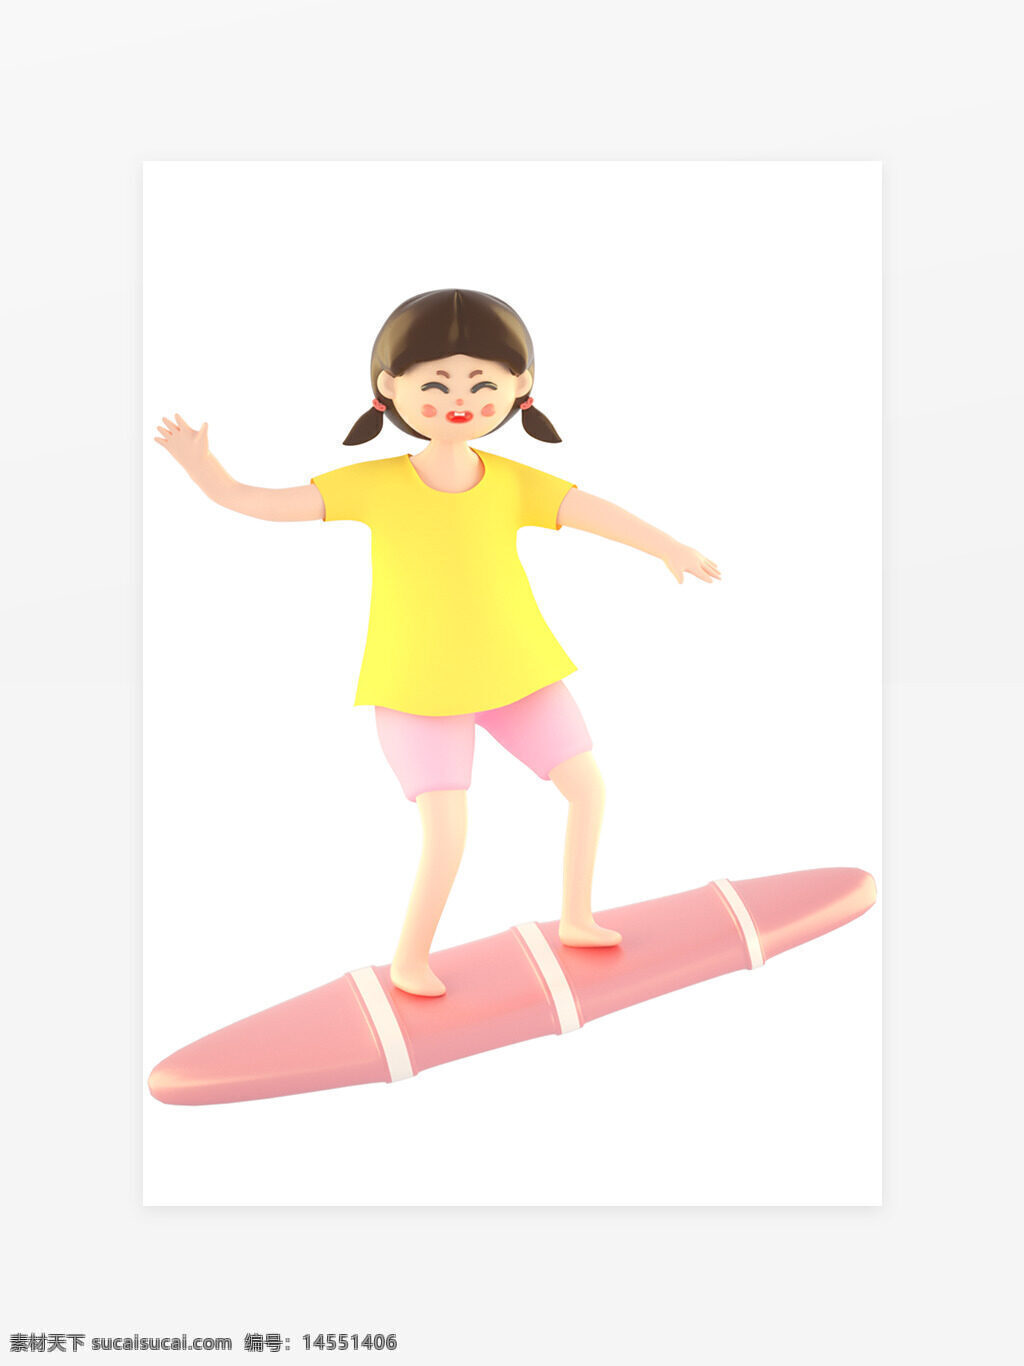 3d 立体 卡通 玩 冲浪板 女孩 人物元素